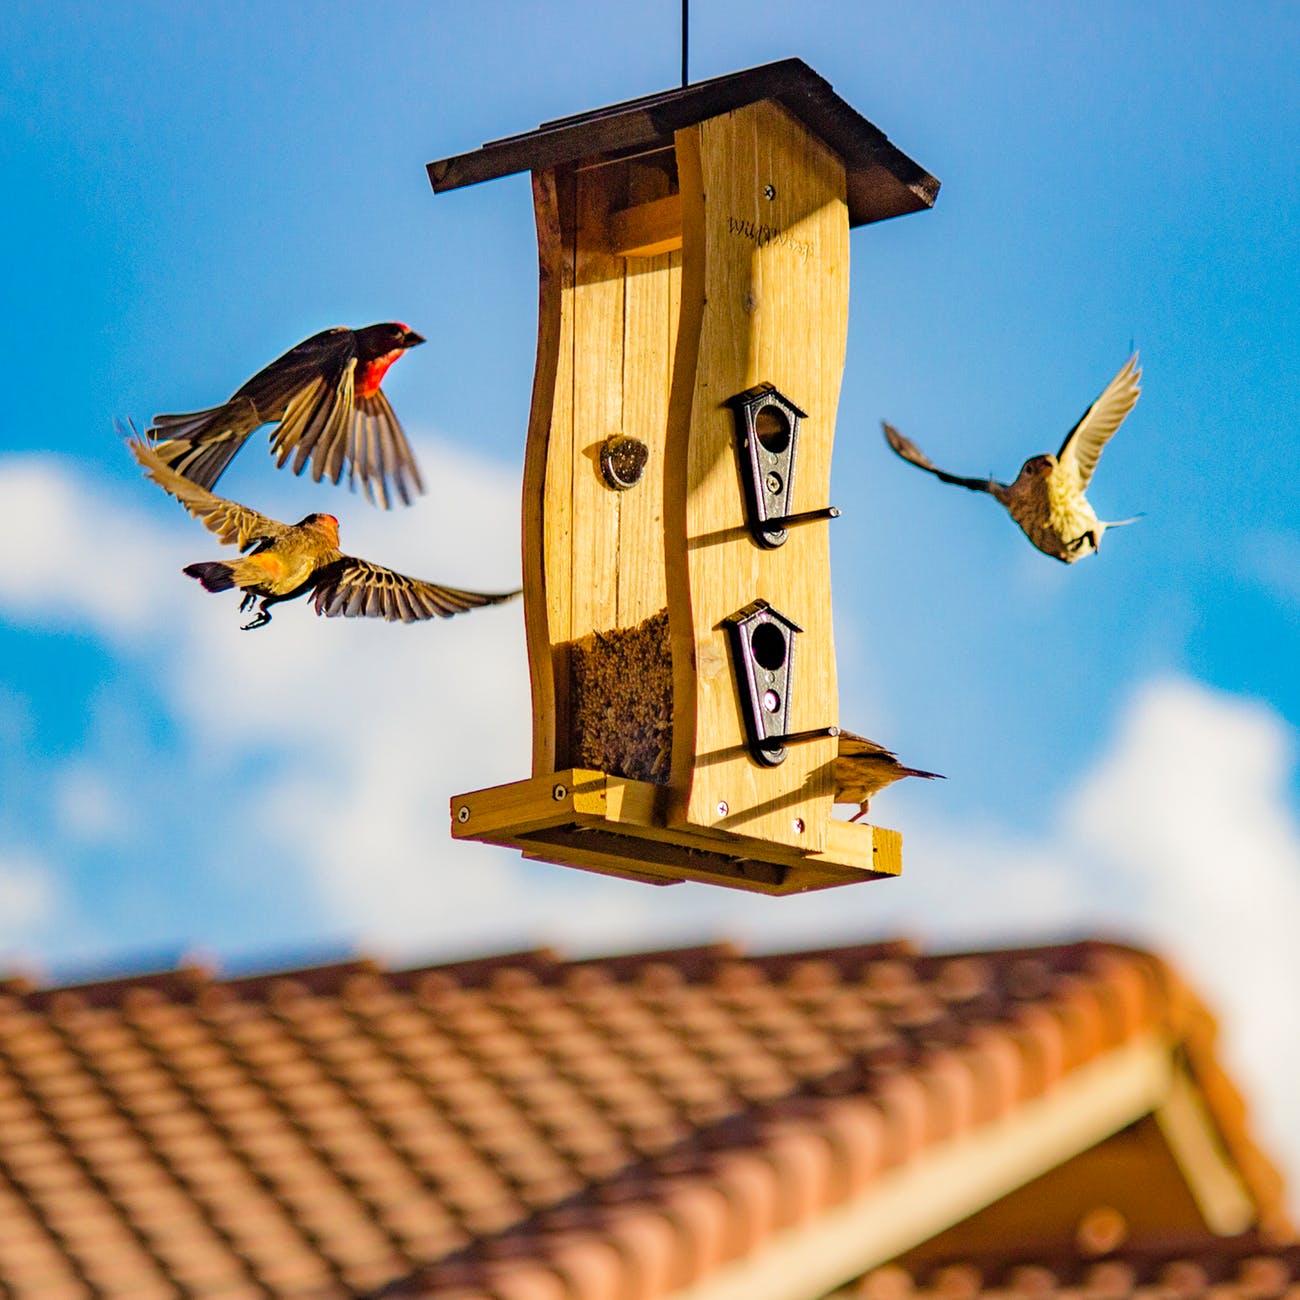 brown and beige finch birds surround bird house